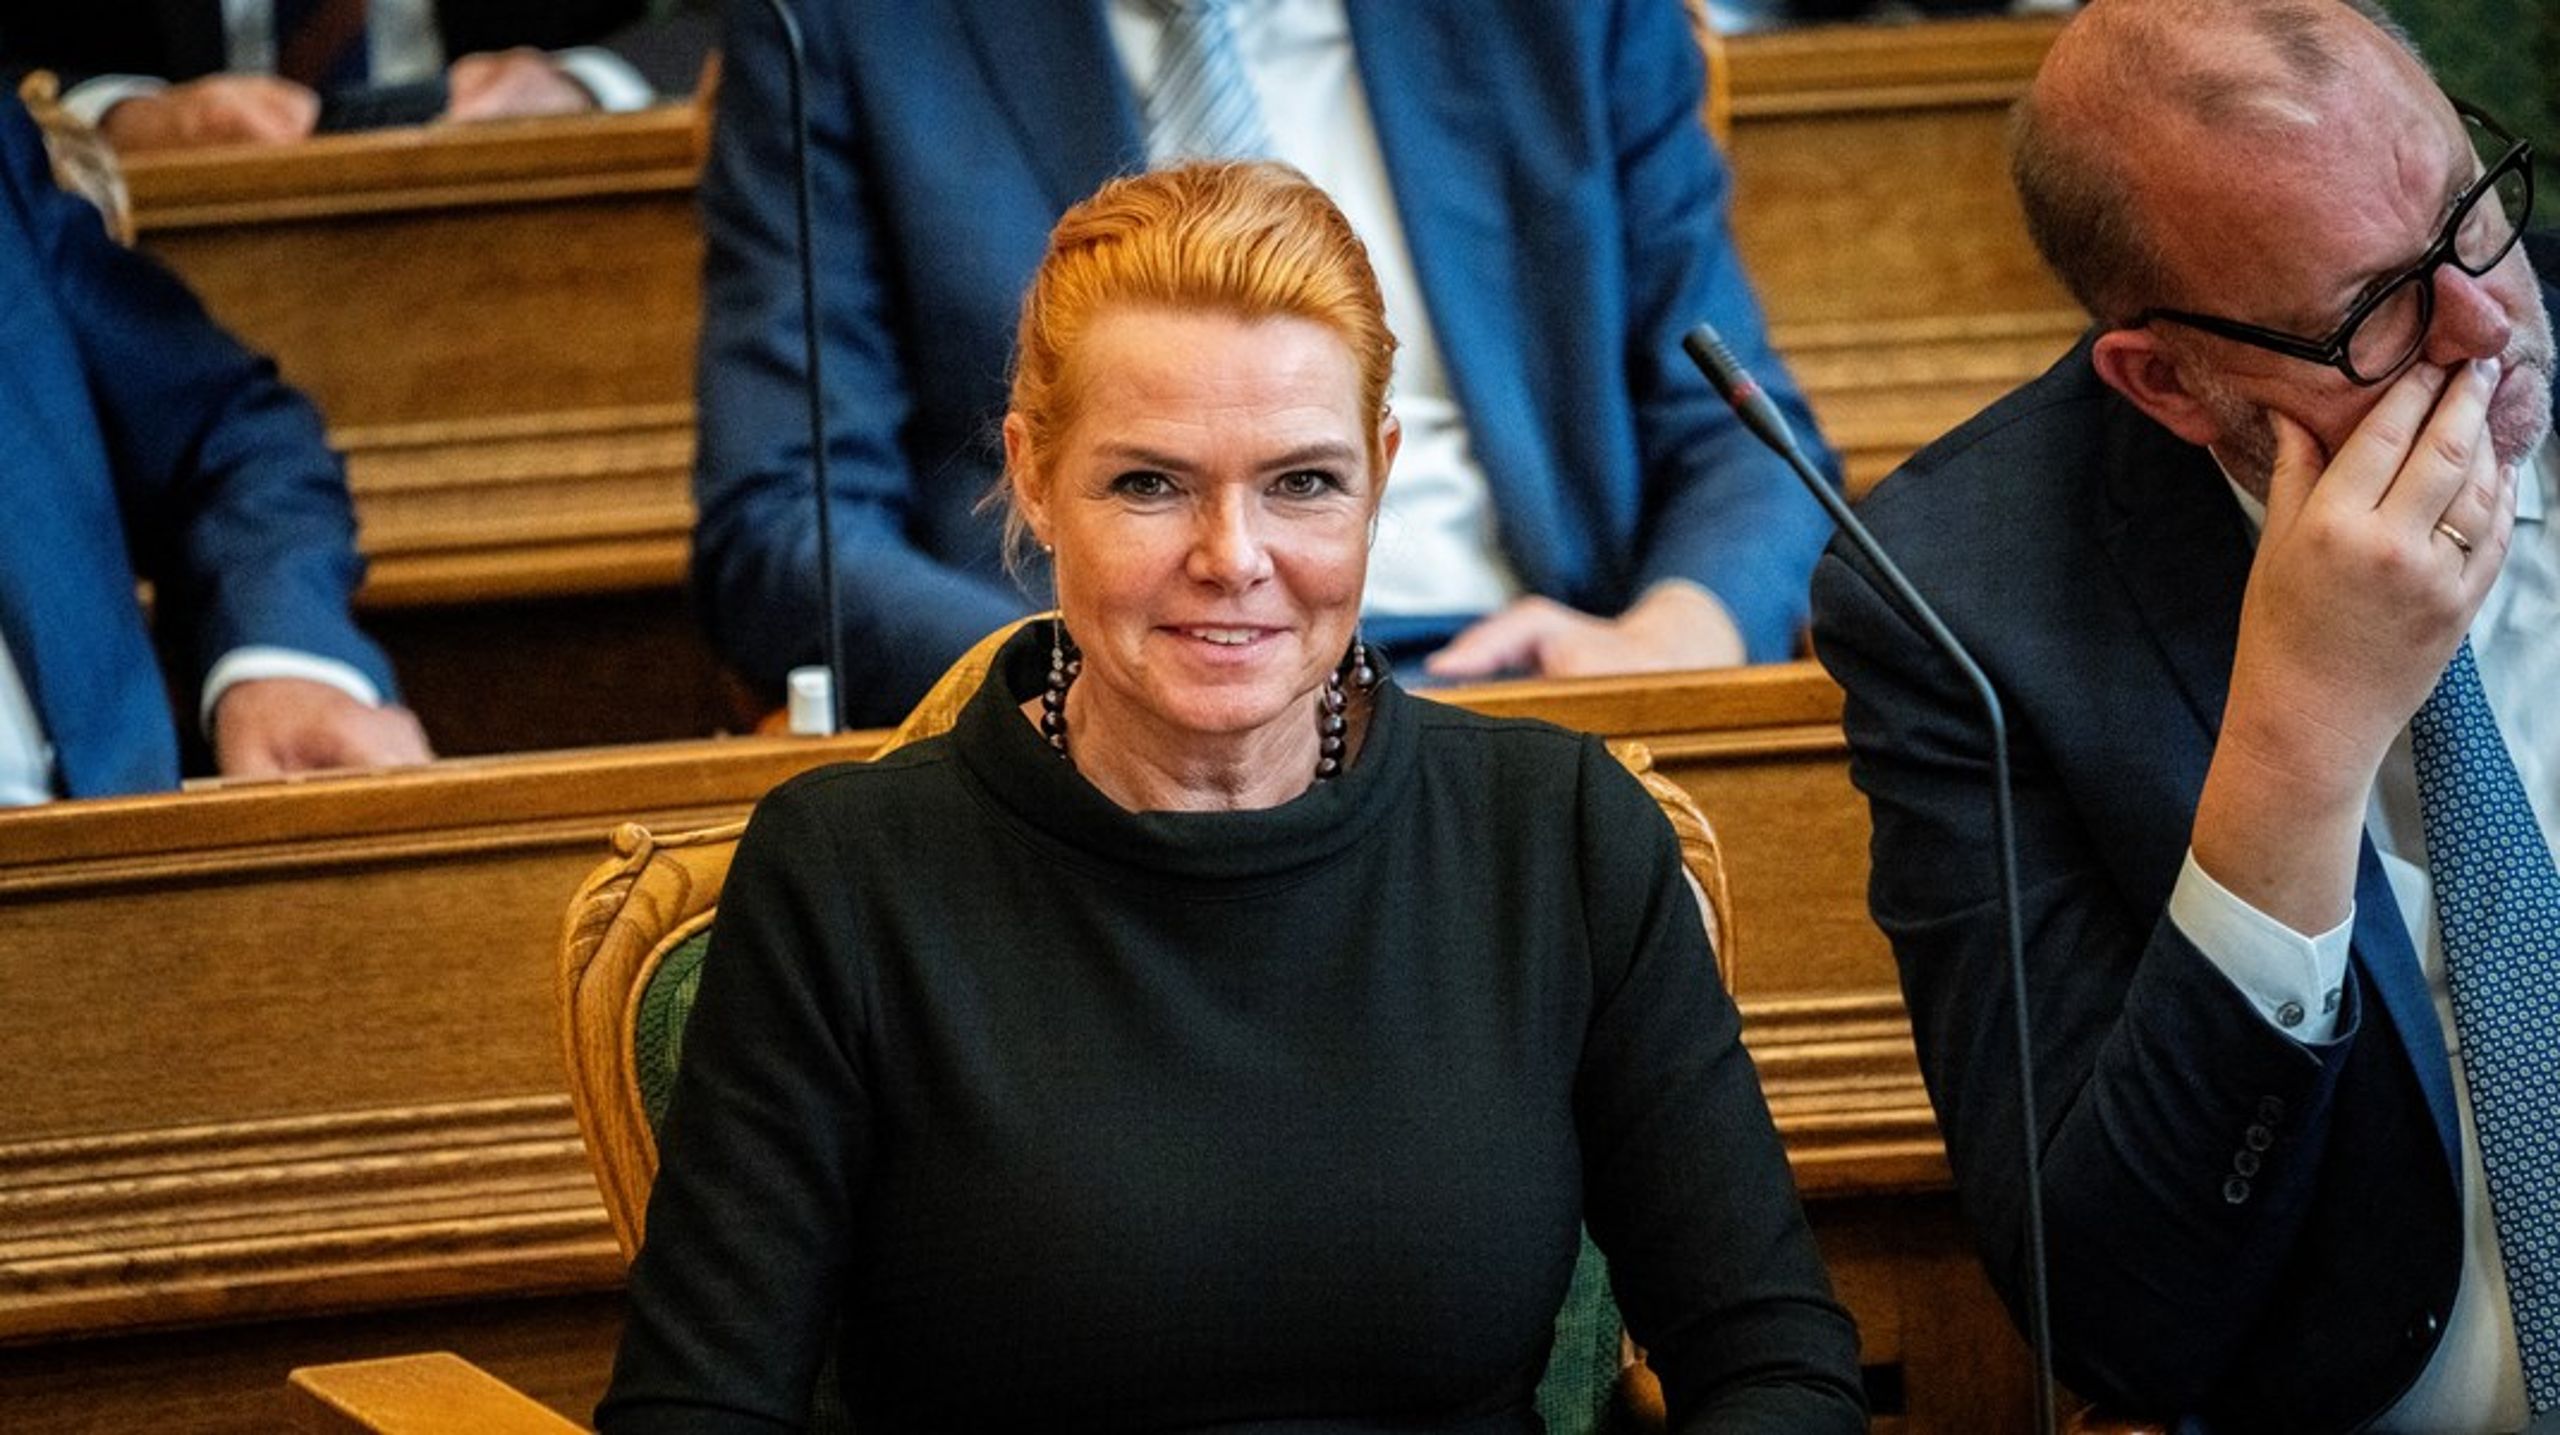 Danmarksdemokraterne, der har Inger Støjberg som partiformand, foreslår igen at udflytte 10.000 statslige arbejdspladser. Forslaget var også en del af deres forrige finanslovsforslag.&nbsp;